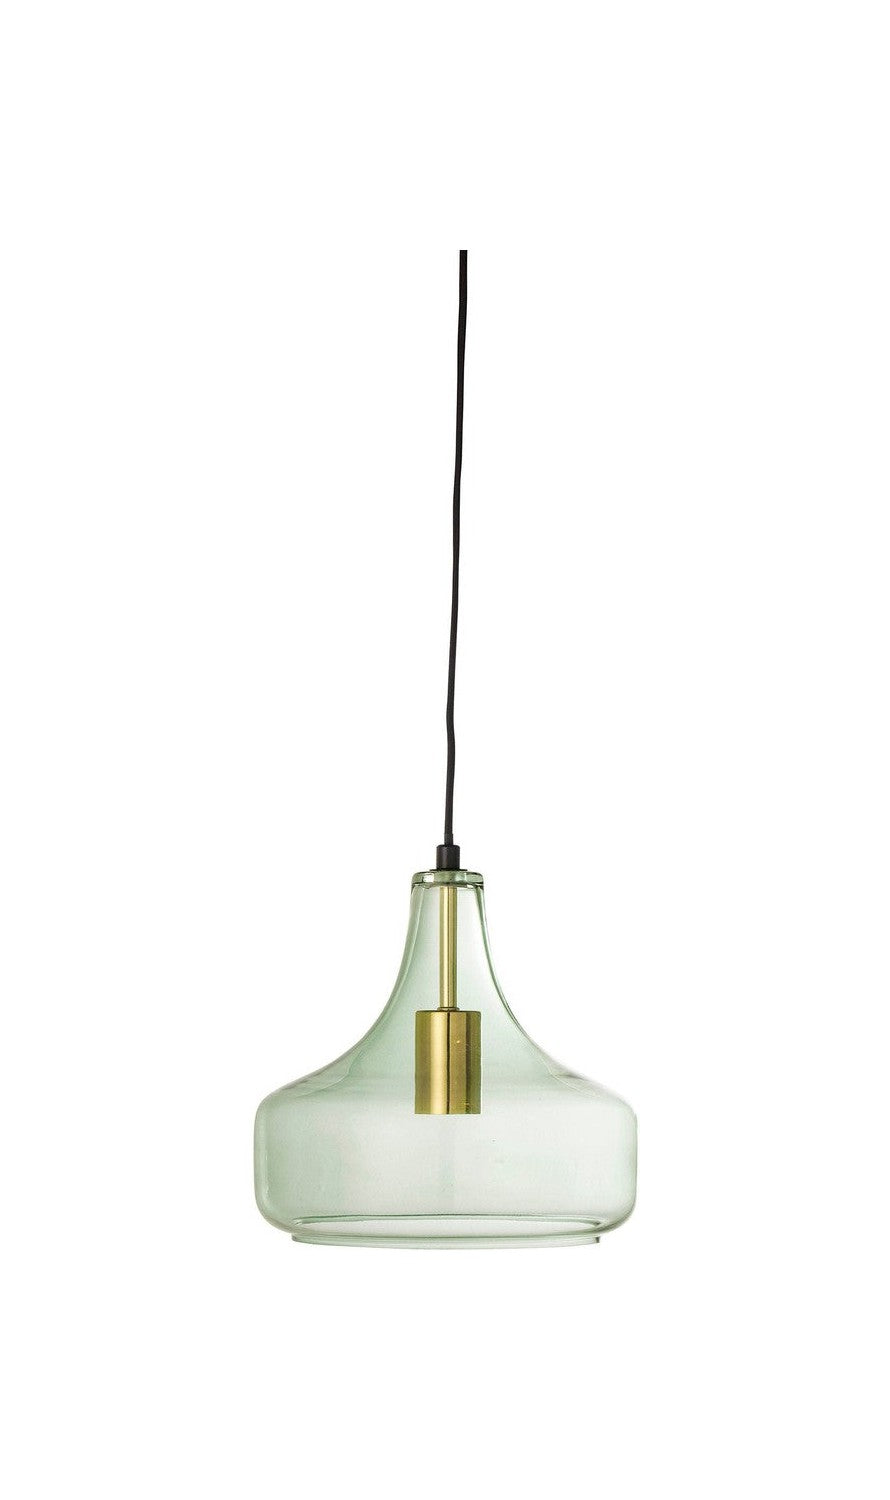 Bloomingville Yuser hanglamp, groen, glas